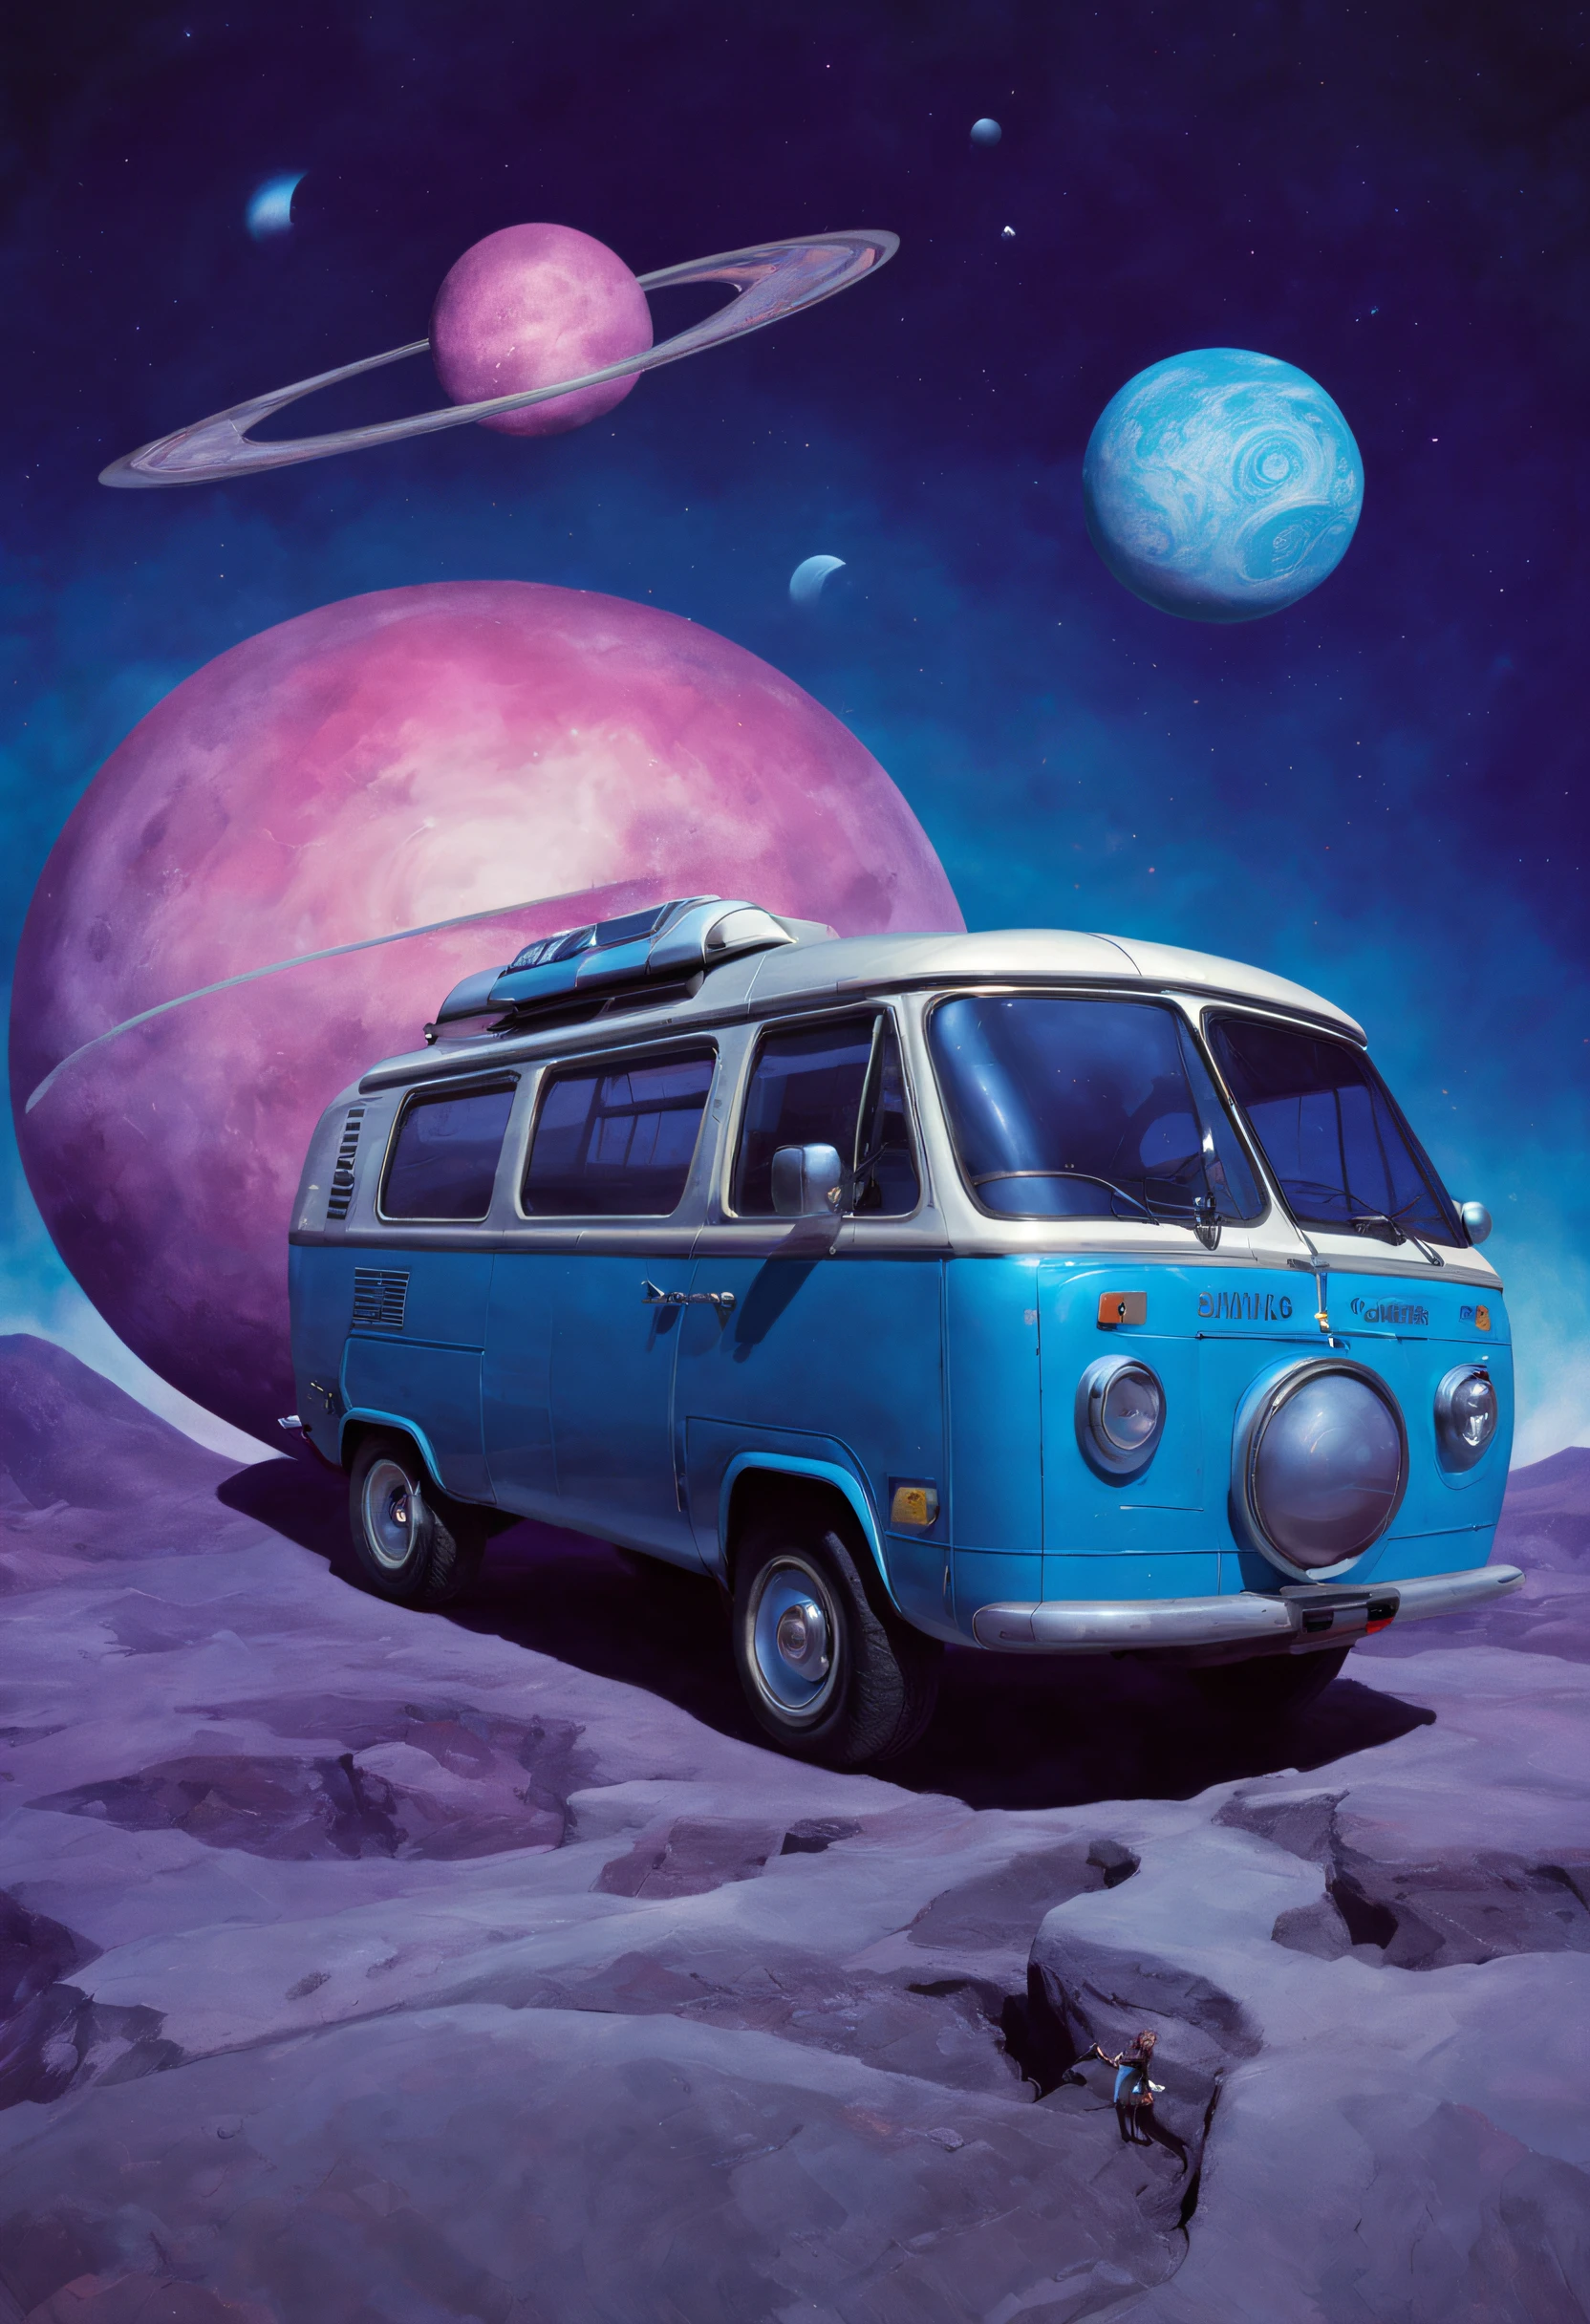 Ein riesiger futuristischer Van im Weltraum, Ausgefallener progressiver Bandstil der 1970er Jahre mit viel Glanz, Farben: Blau, Roza und Lila. Sonnen und Monde im Hintergrund.